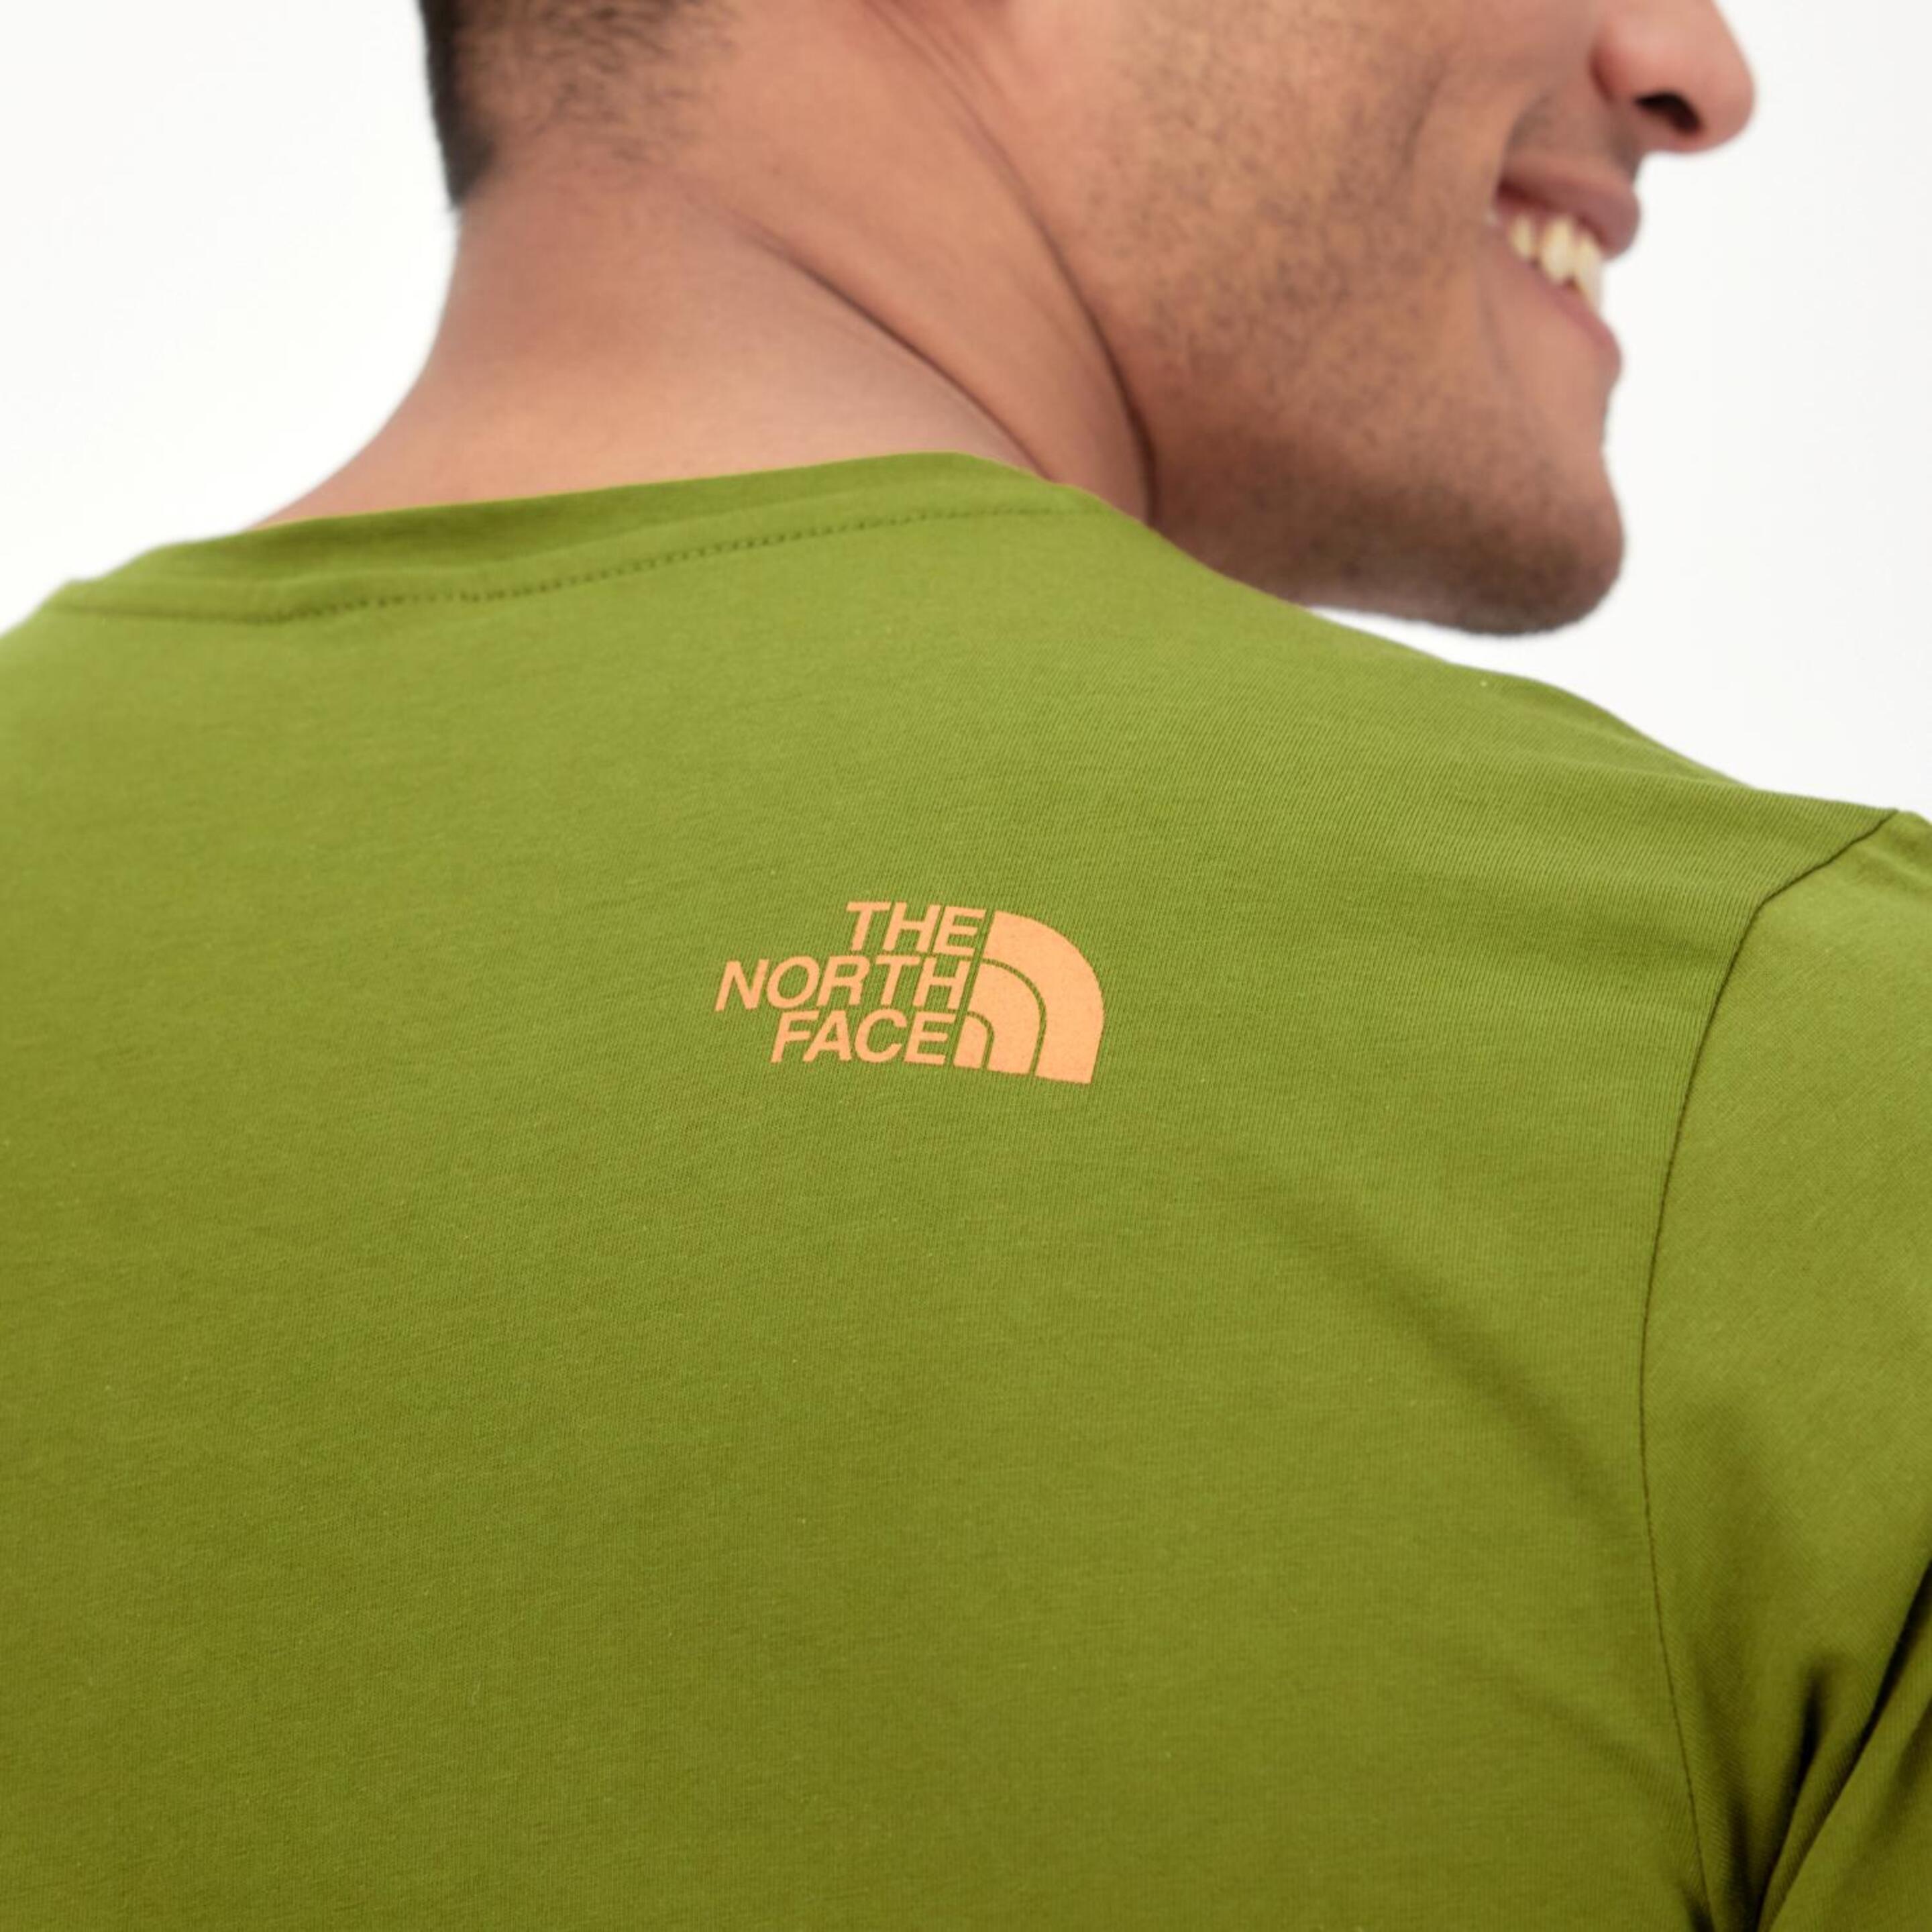 The North Face Rust 2 - Kaki - Camiseta Montaña Hombre